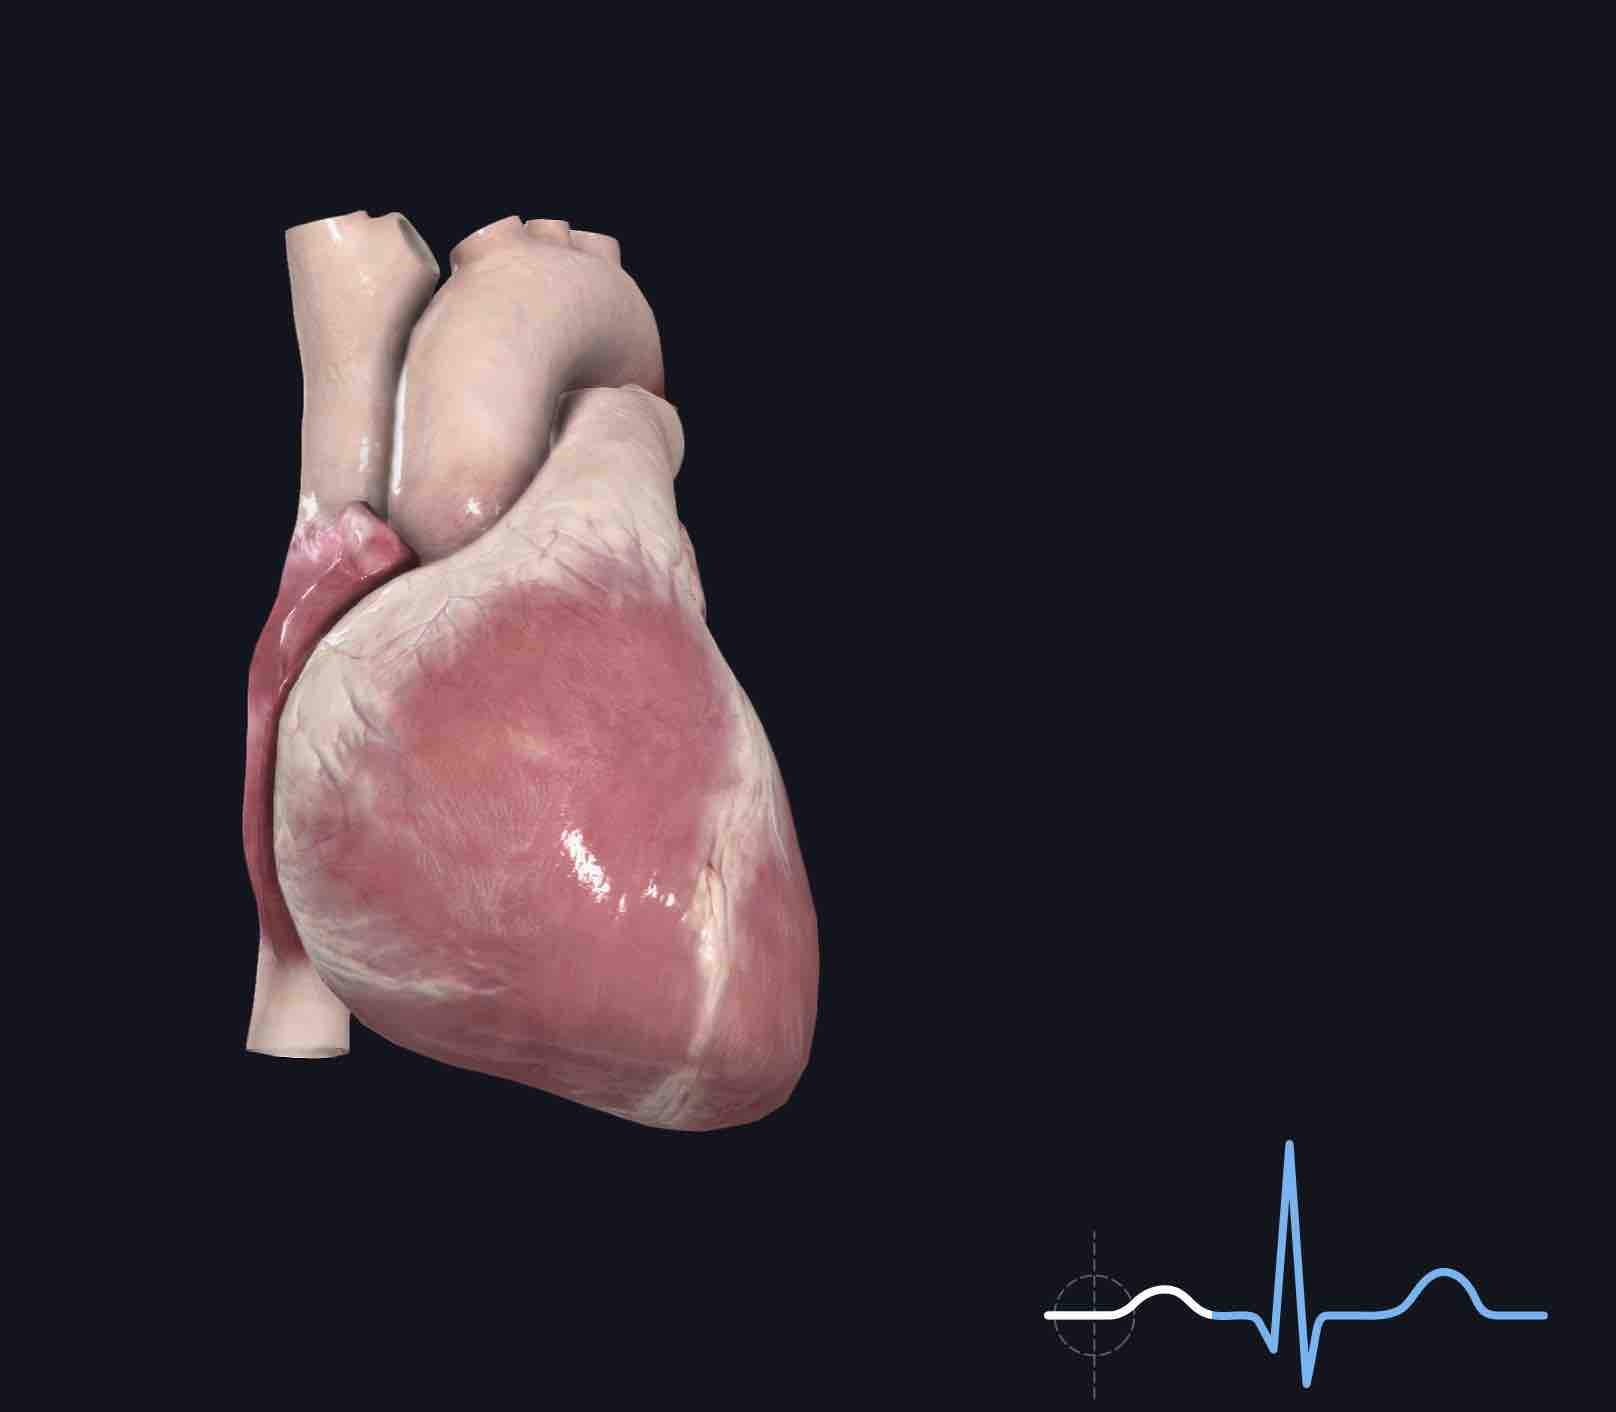 射频热凝适用于治疗患有心脏病的三叉神经痛患者